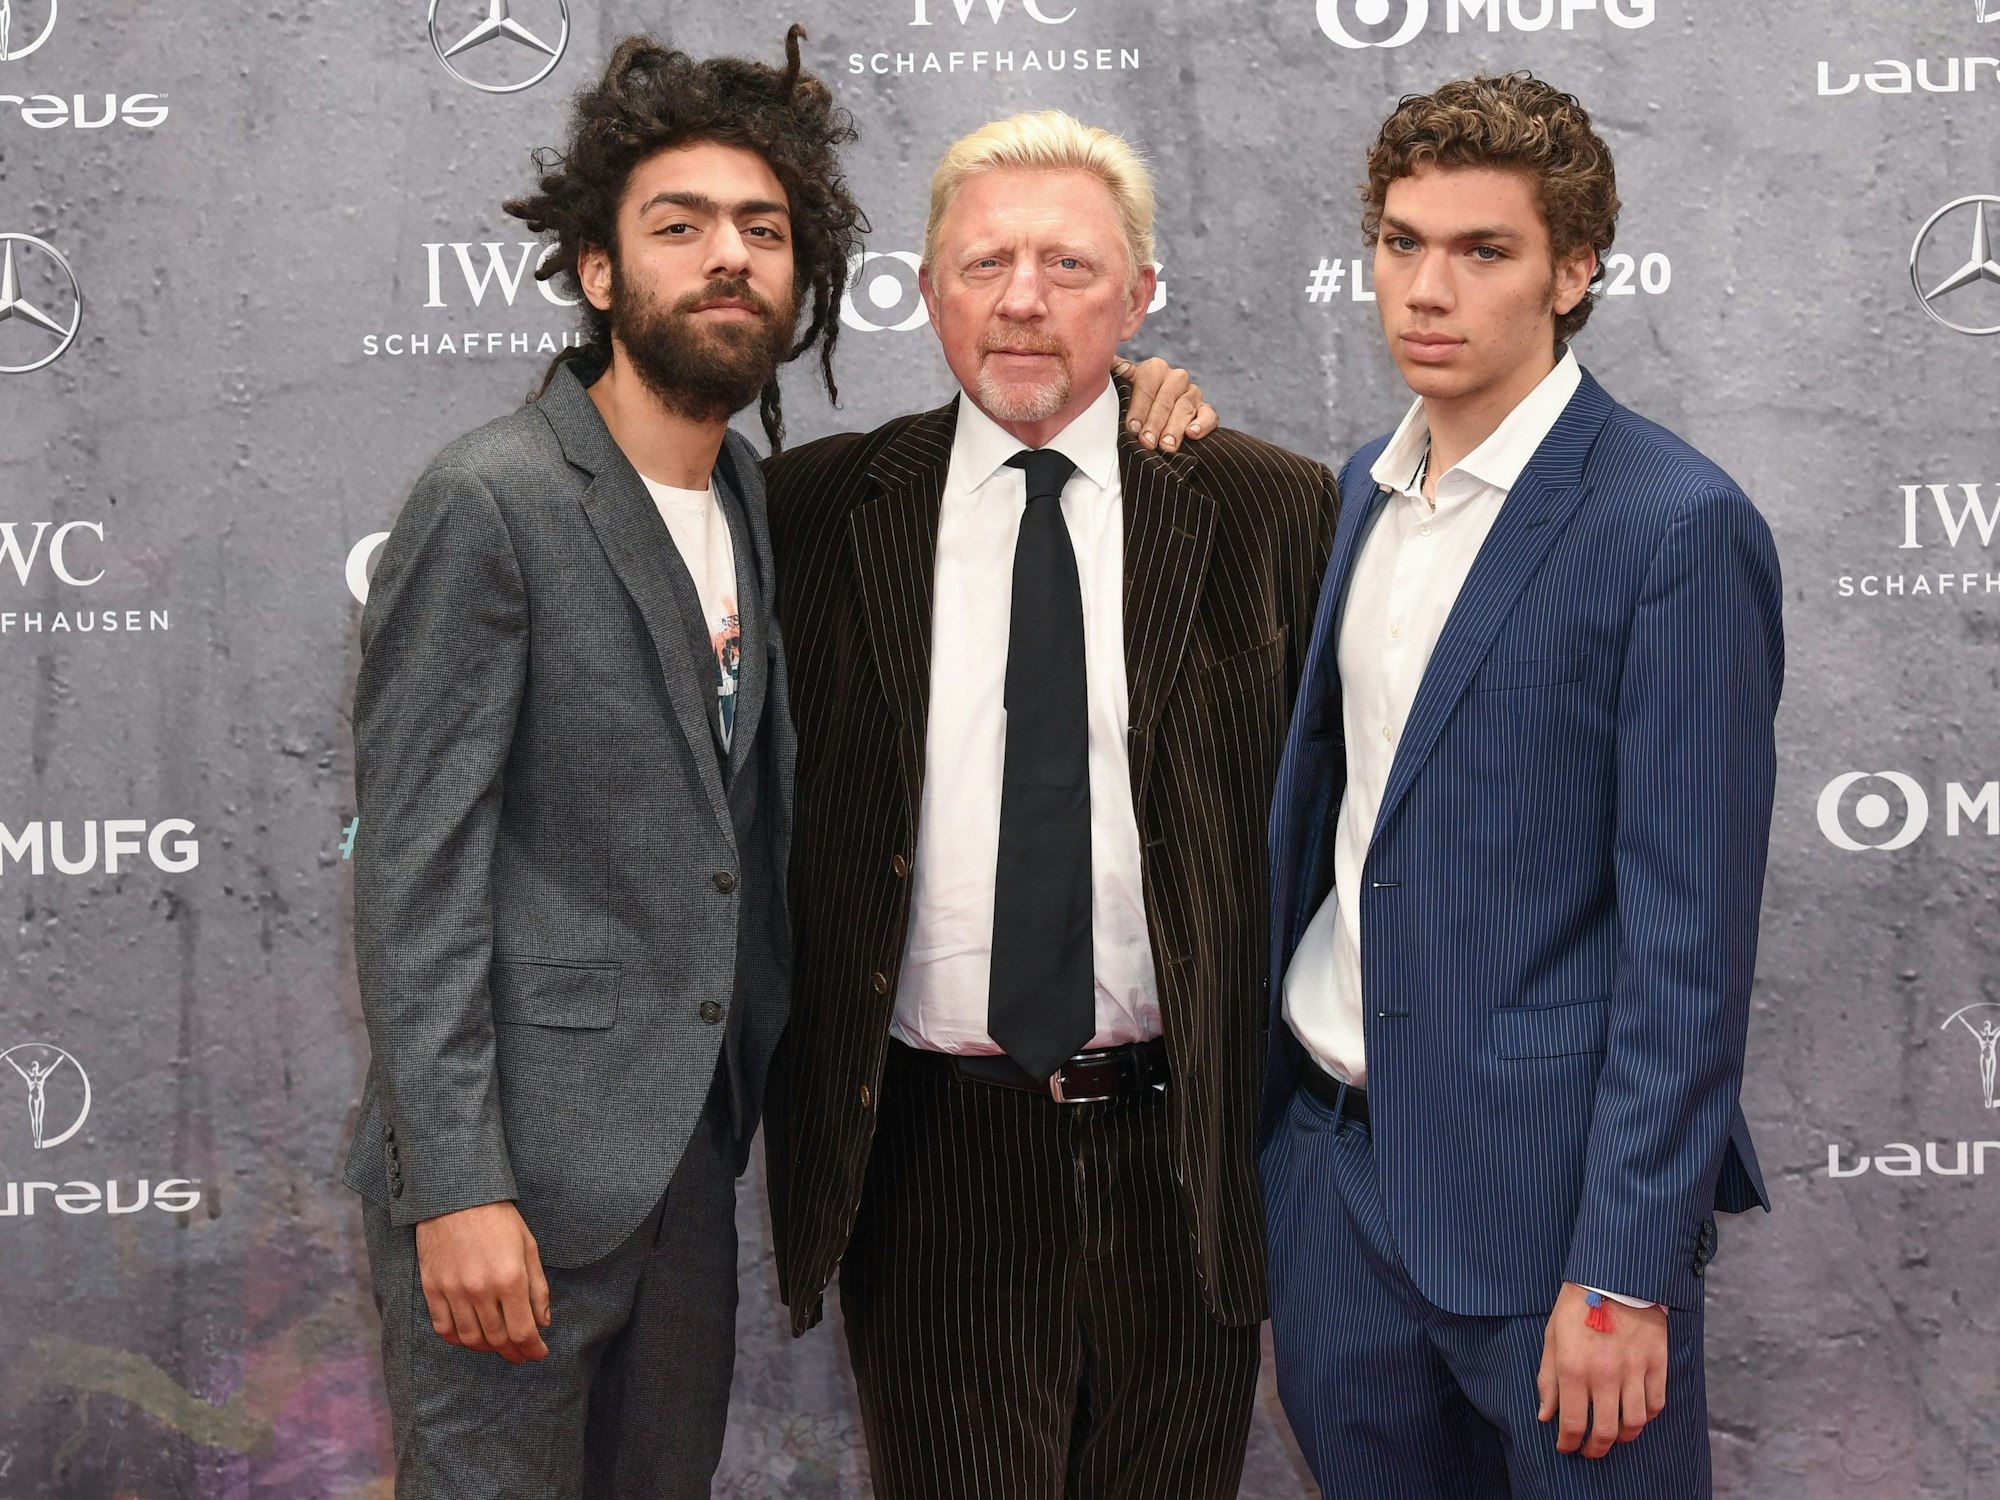 Boris Becker (M) mit zwei seiner drei Söhne: Noah (l) und Elias (r) erschienen 2020 mit ihrem Vater bei der Verleihung der Laureus World Sports Awards.